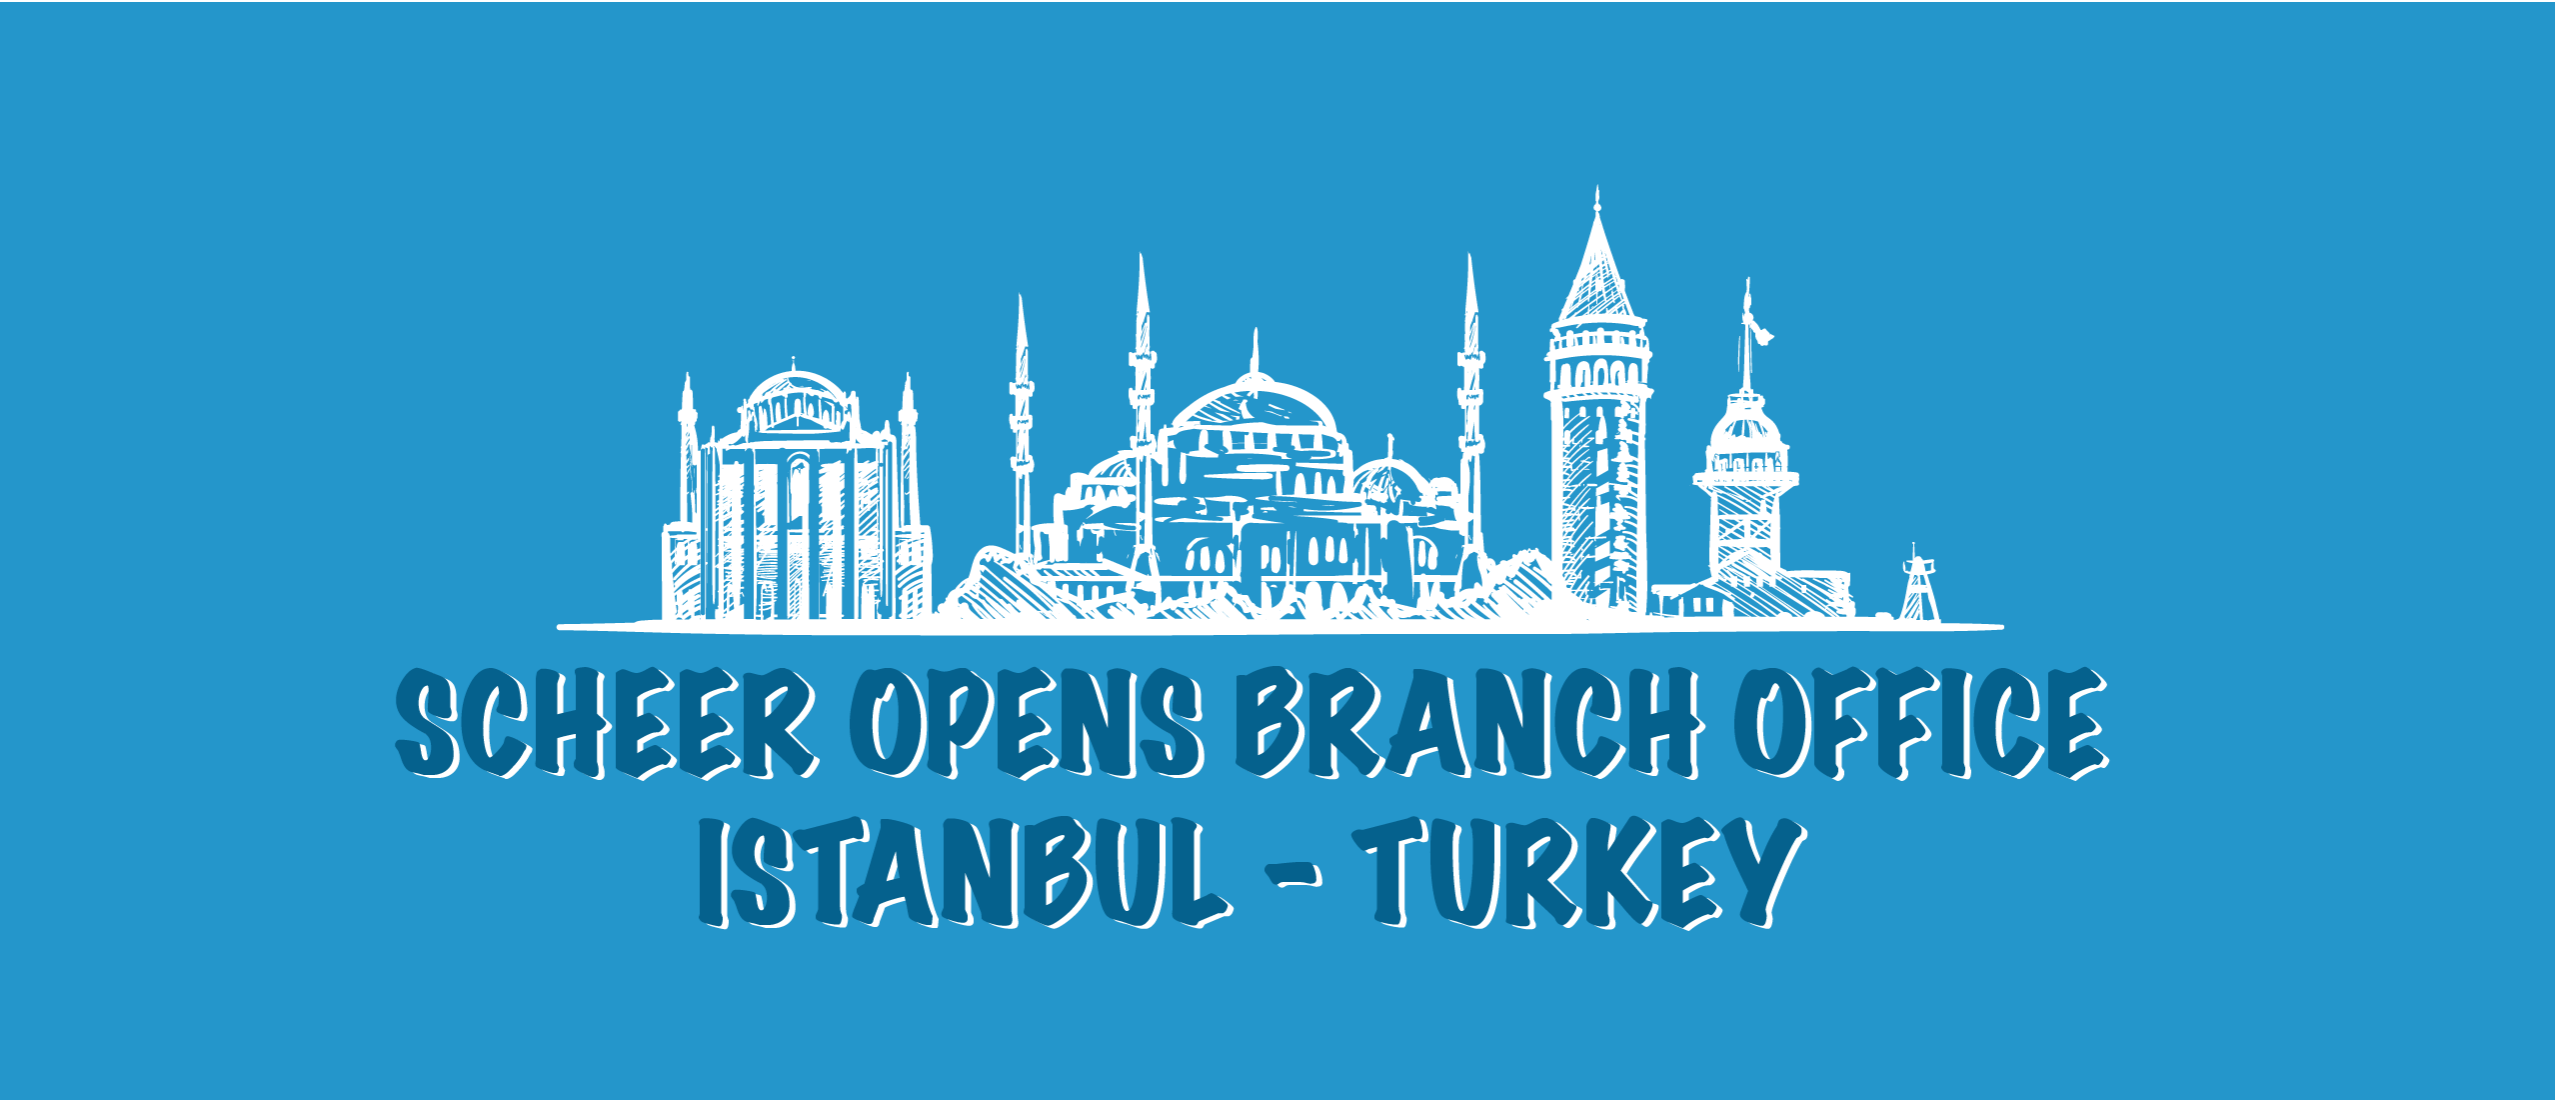 Scheer opens branch office Istanbul - Turkey